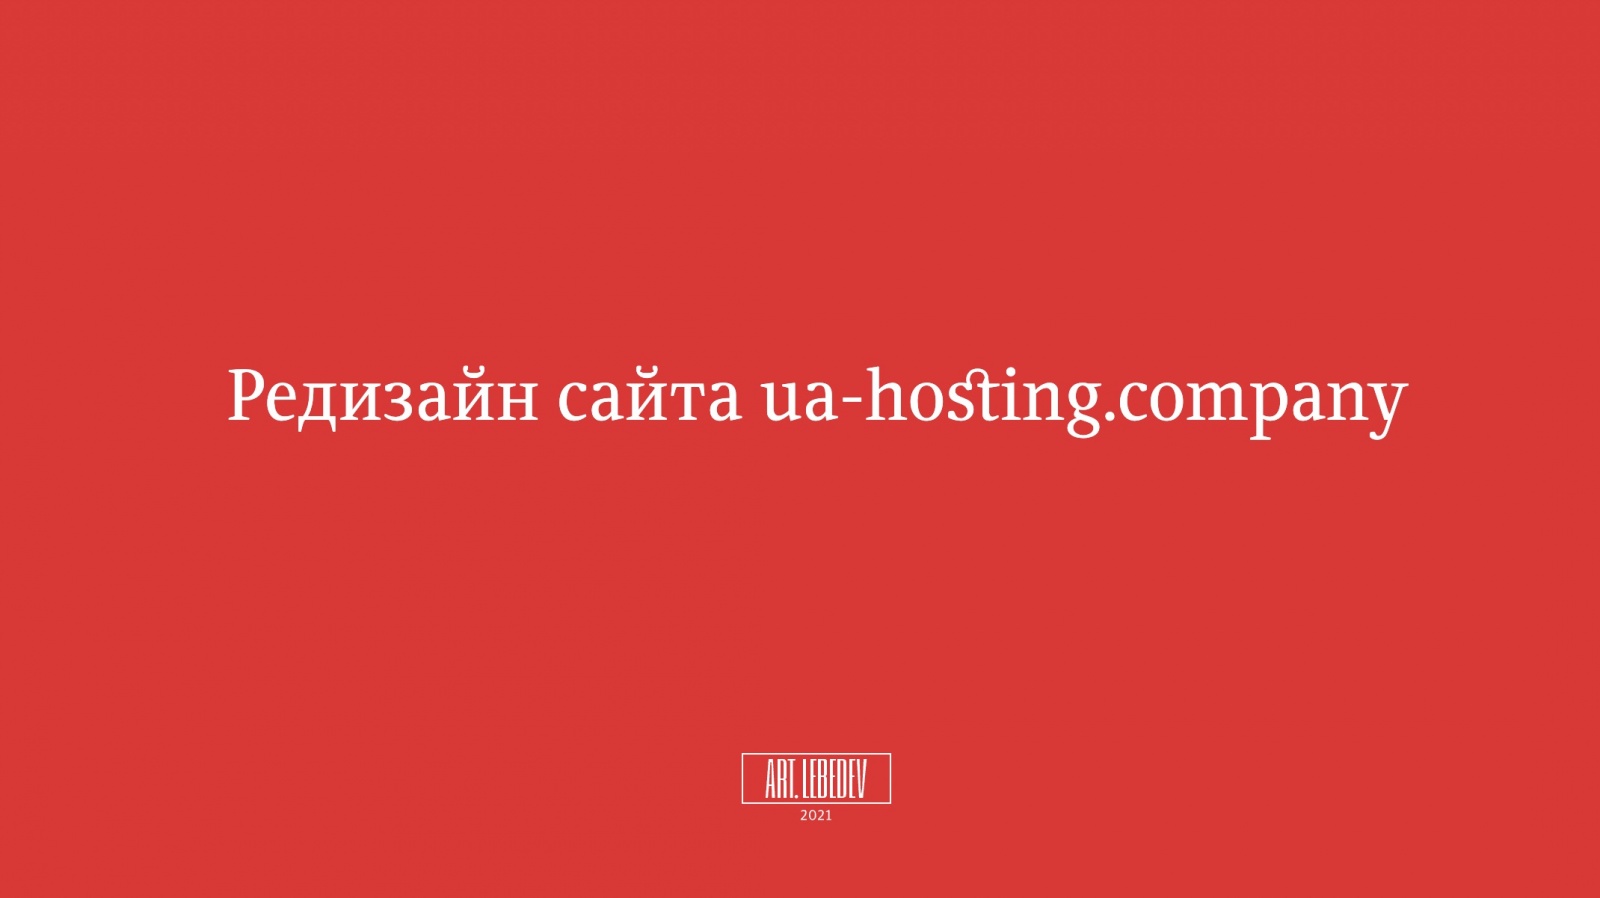 ua-hosting.company — задизайнено в Cтудии Артемия Лебедева, 15 лет спустя - 8